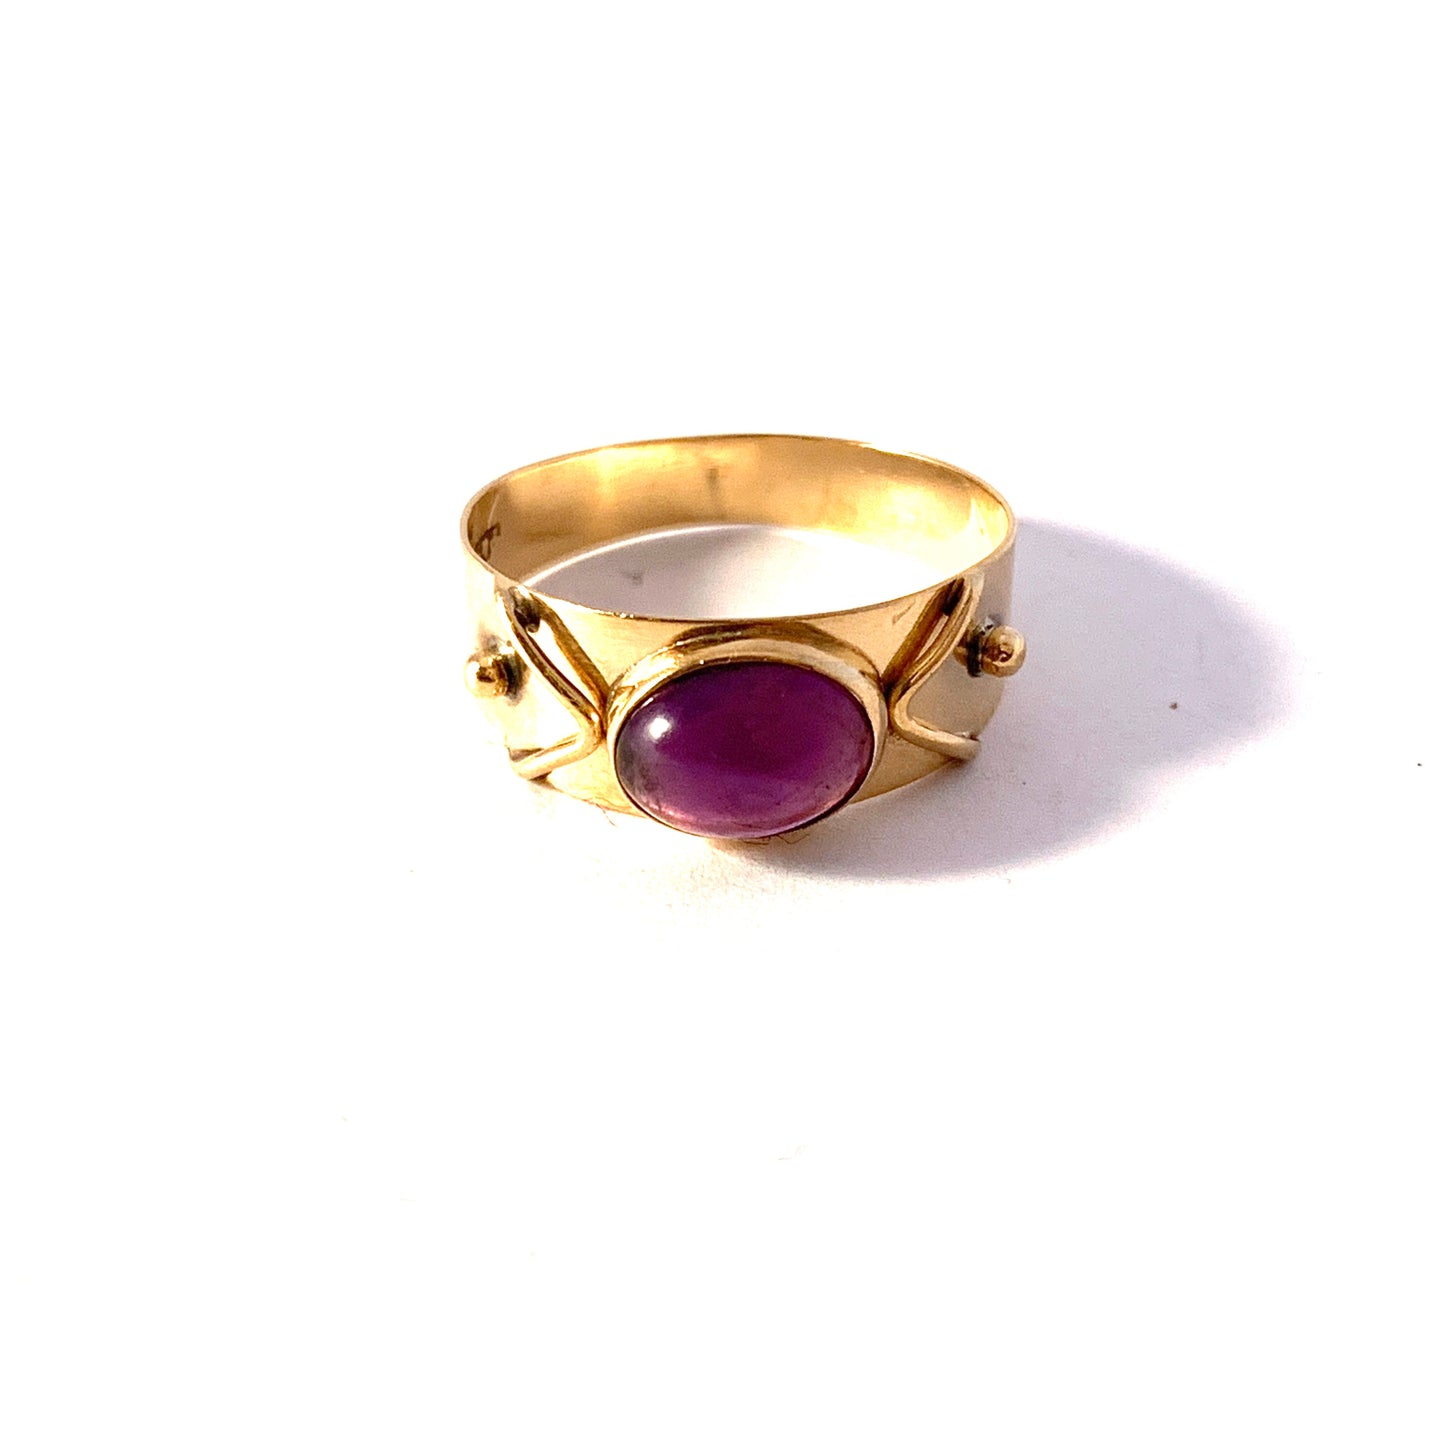 B Davidsson, Sweden 1963. Vintage 18k Gold Amethyst Ring.